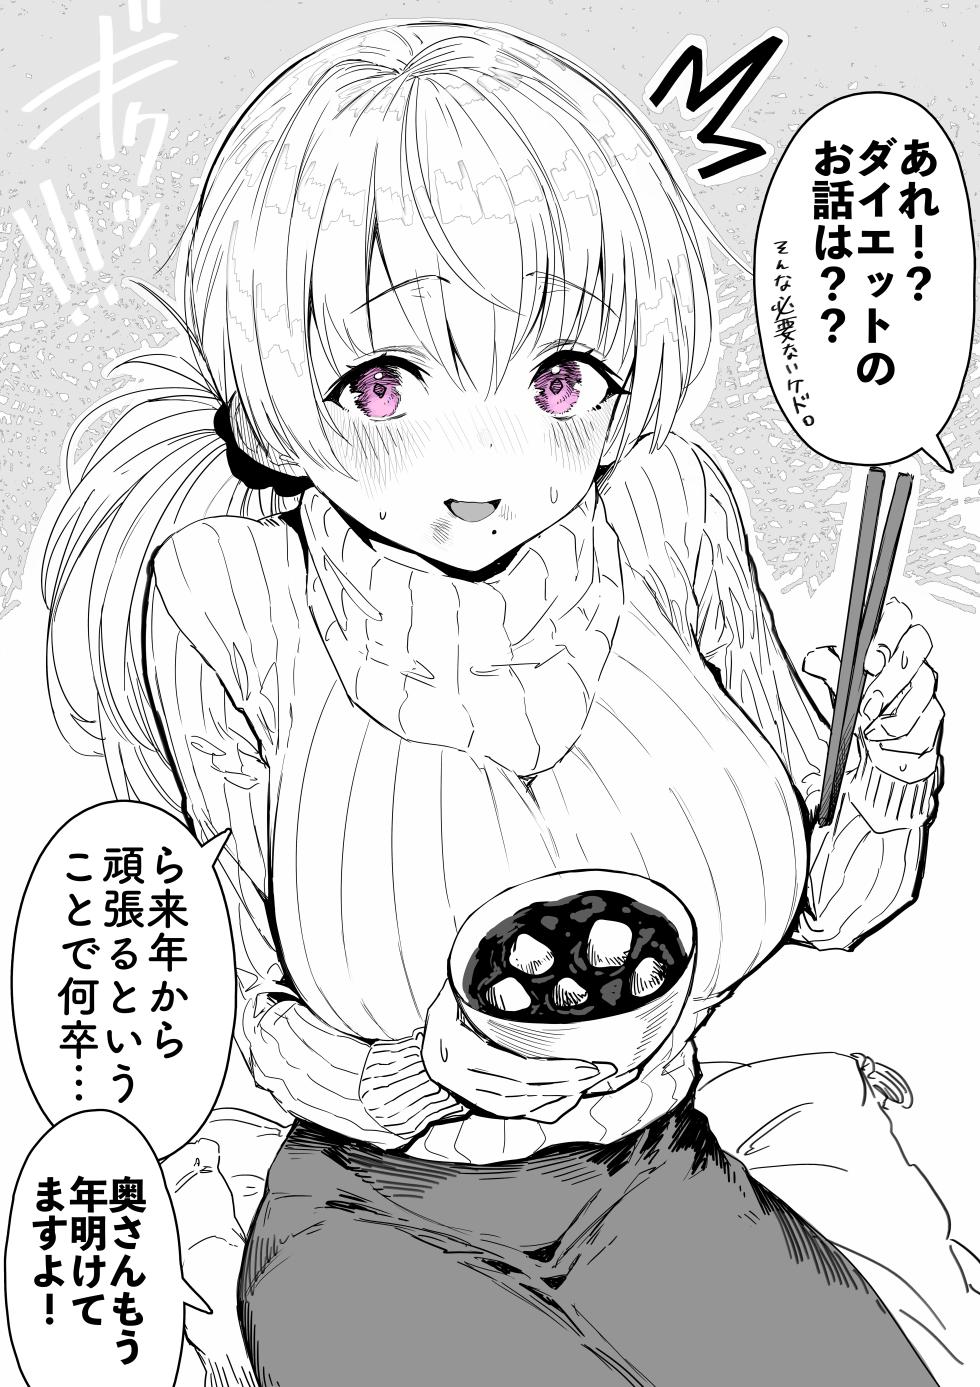 [gibachan] Okusan manga collection - Page 30